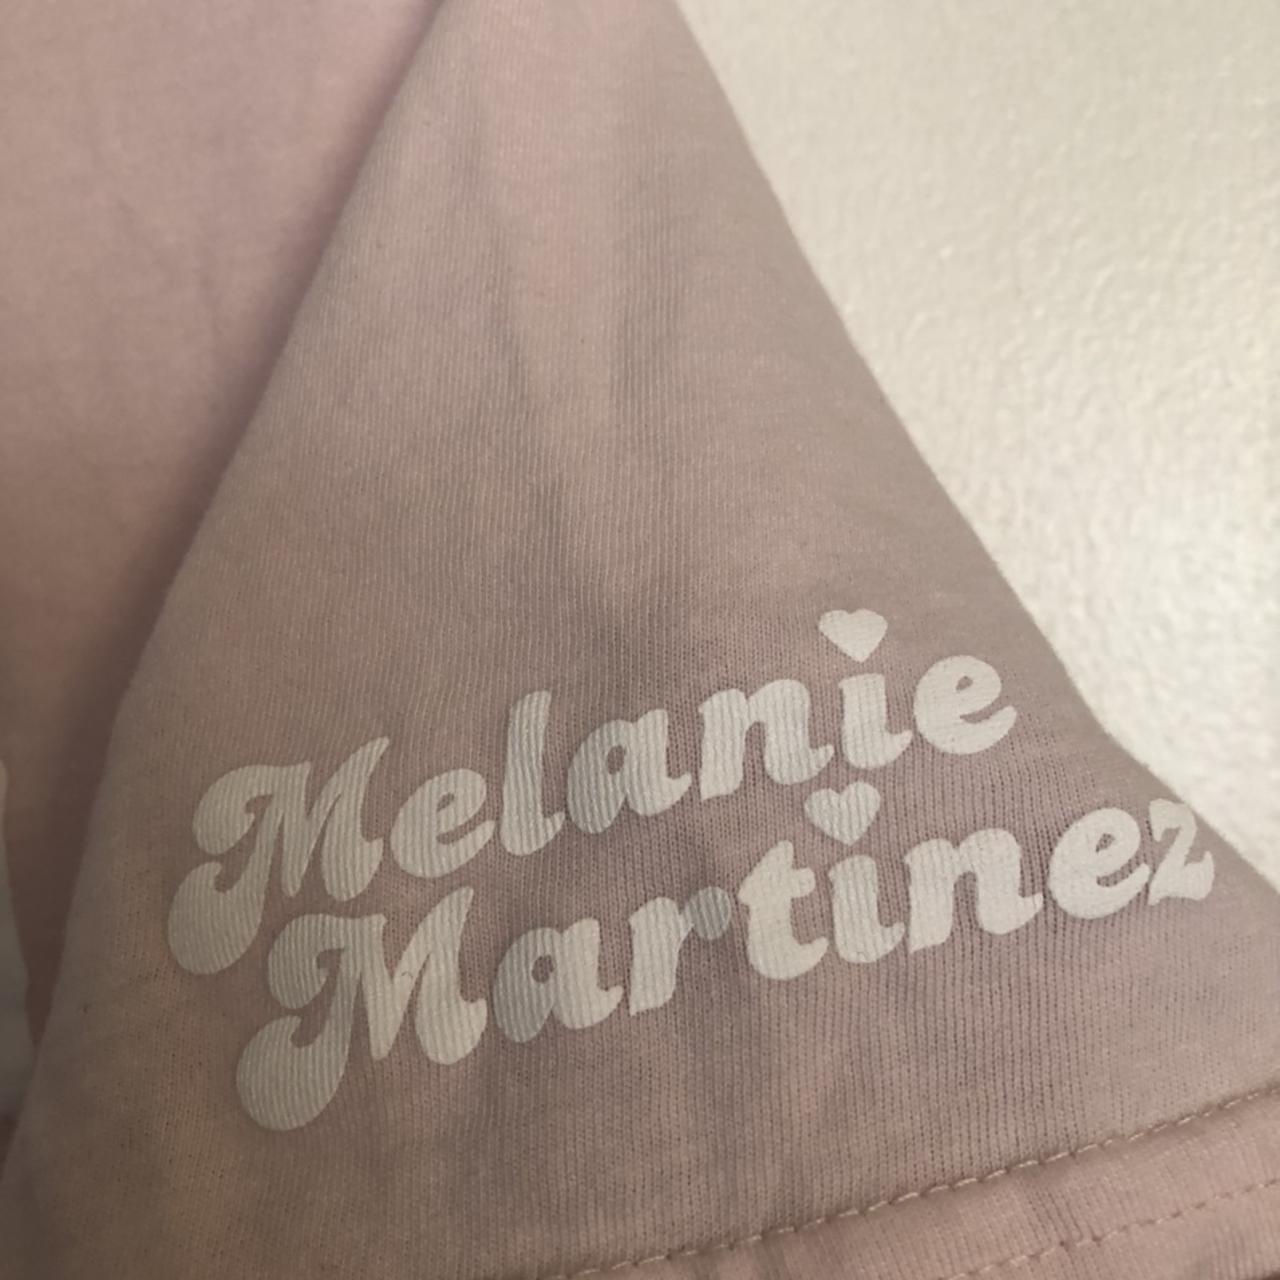 k12 melanie martinez merch tshirt🌸! in good - Depop